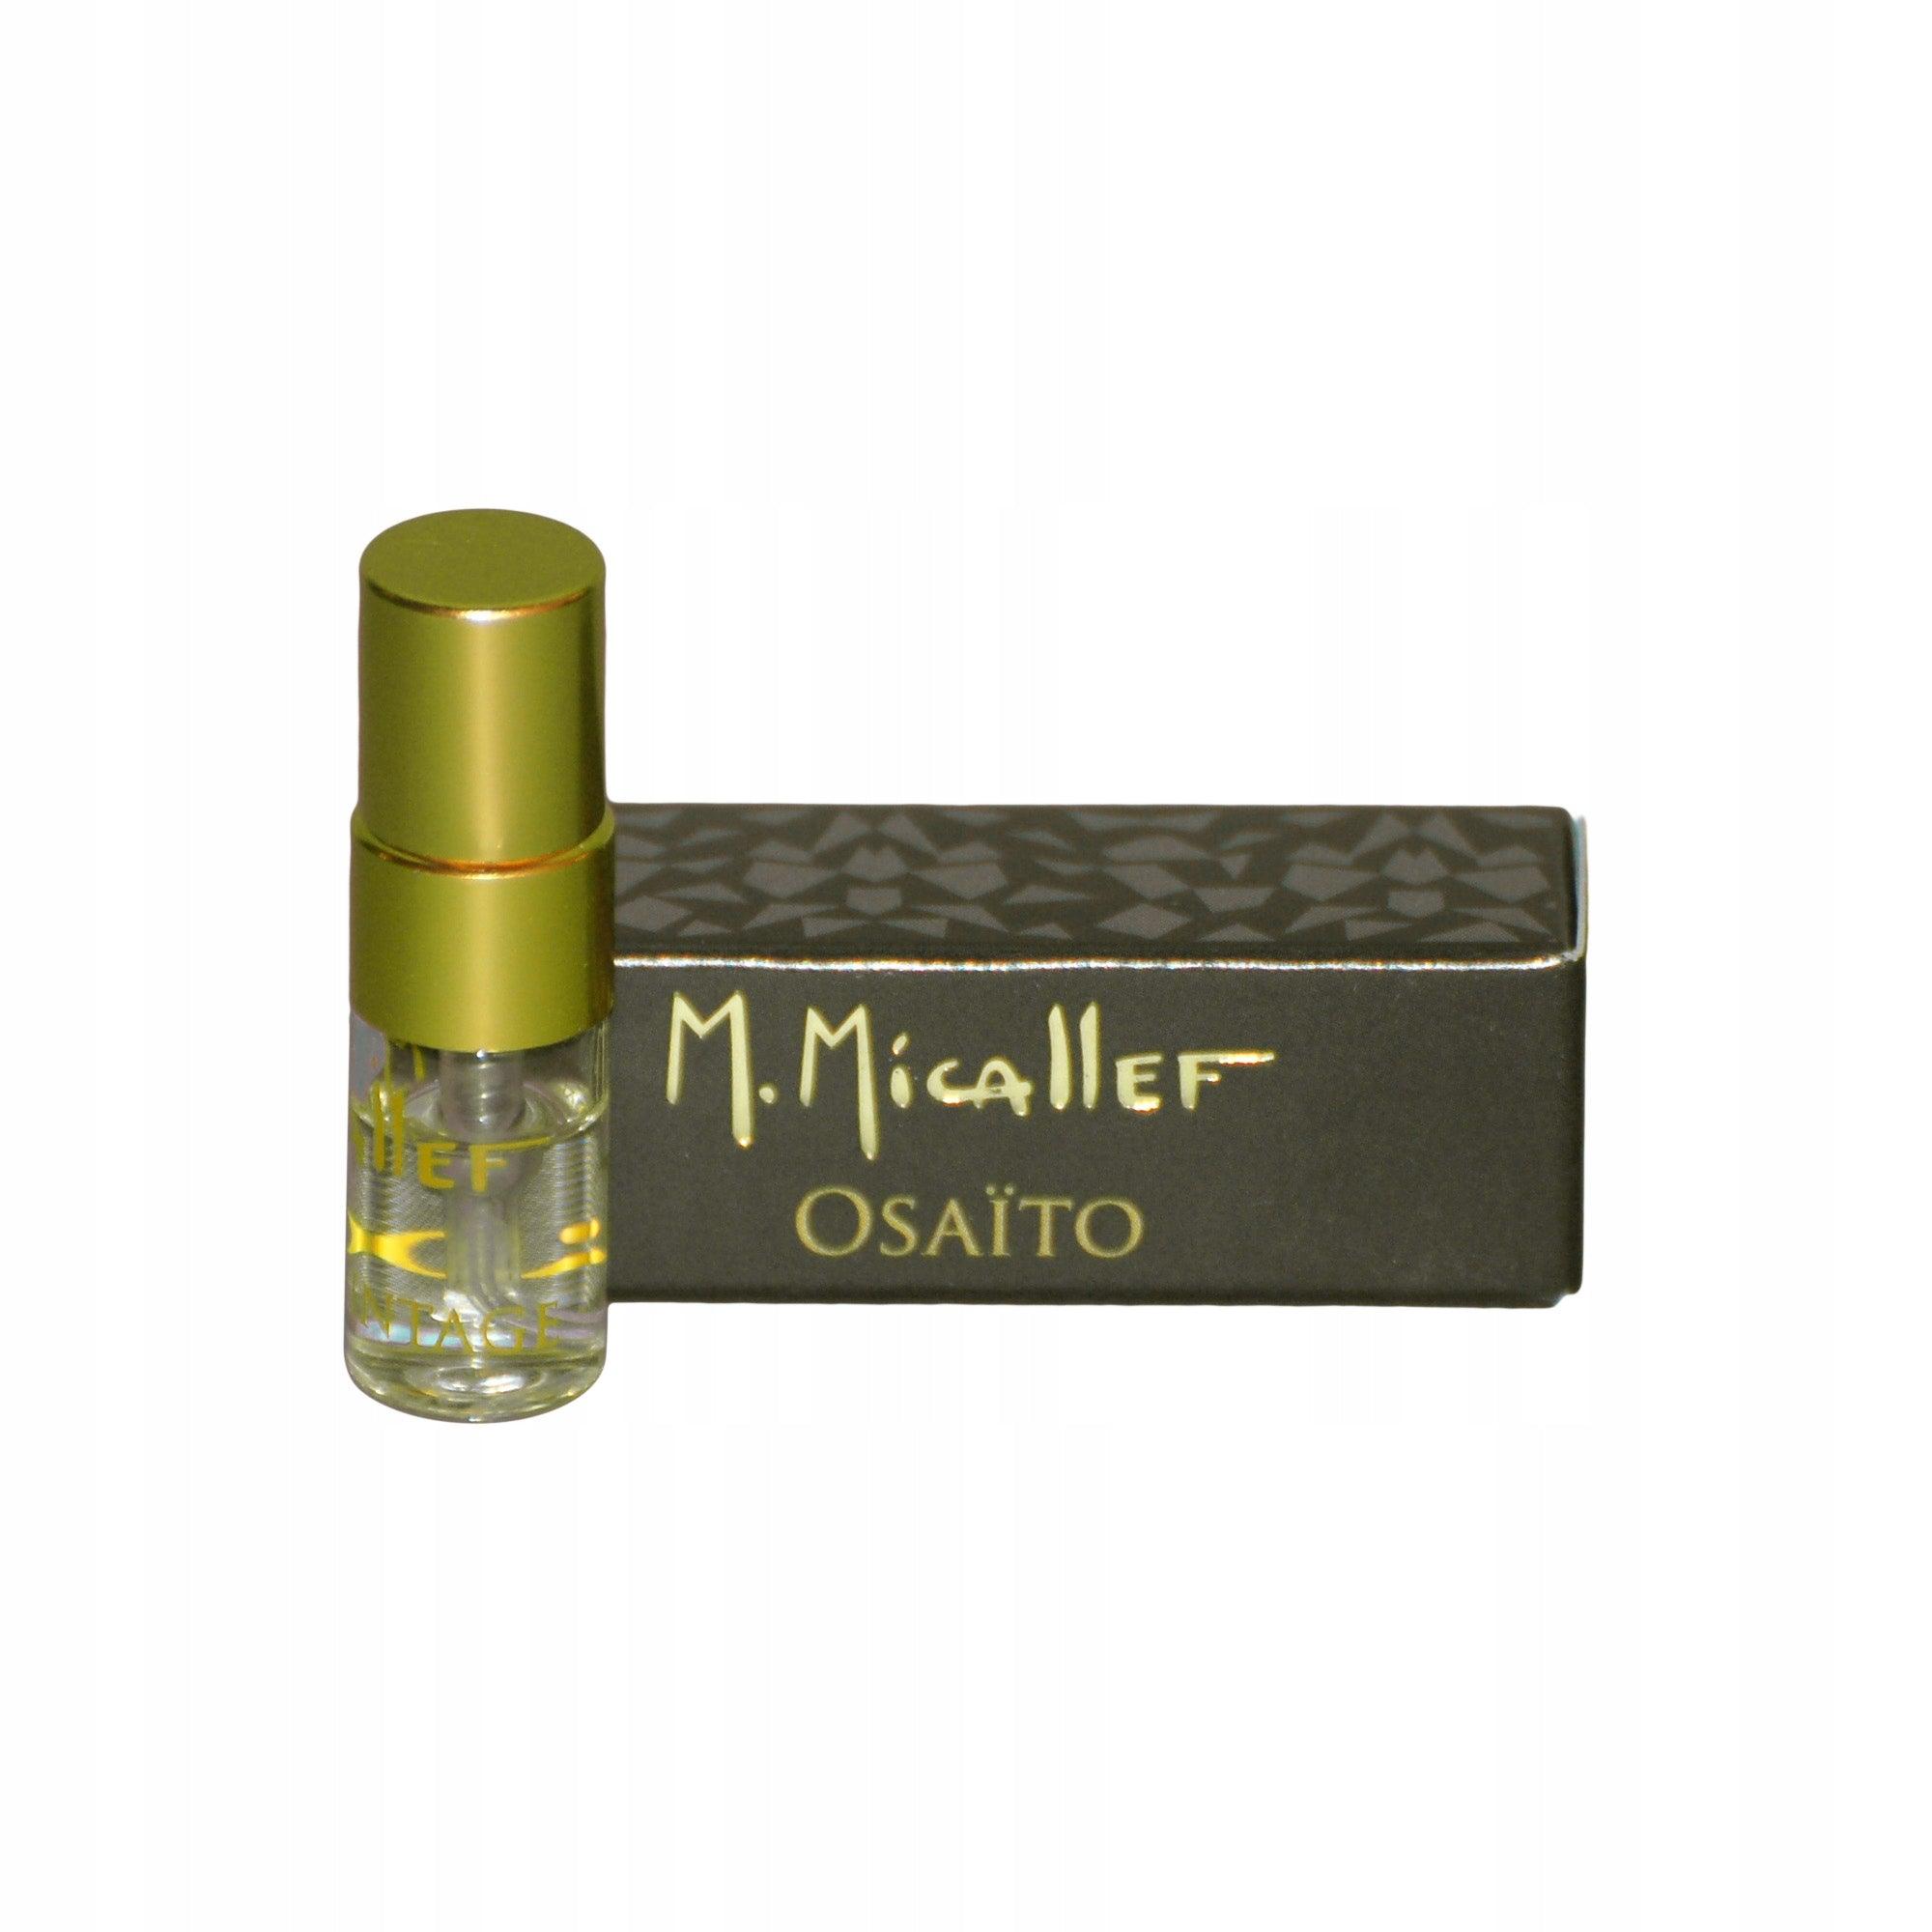 M.Micallef Osaito TESTER | Parfyme | M.Micallef | JK SHOP | JK Barber og herre frisør | Lavepriser | Best